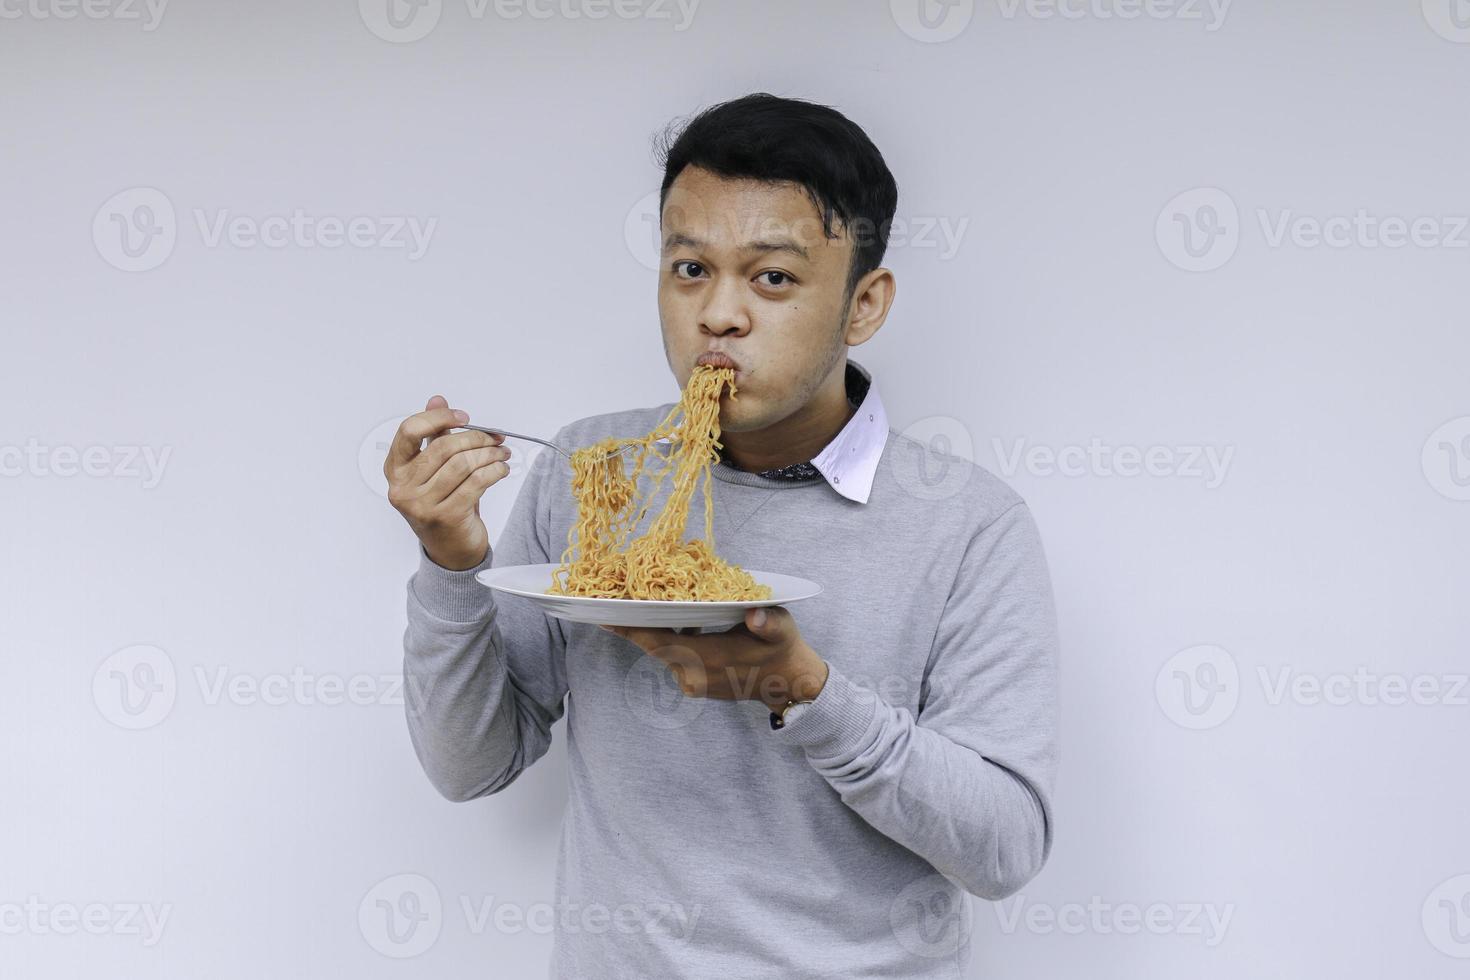 il giovane uomo asiatico si diverte con le tagliatelle. mangiare il concetto di pranzo. foto